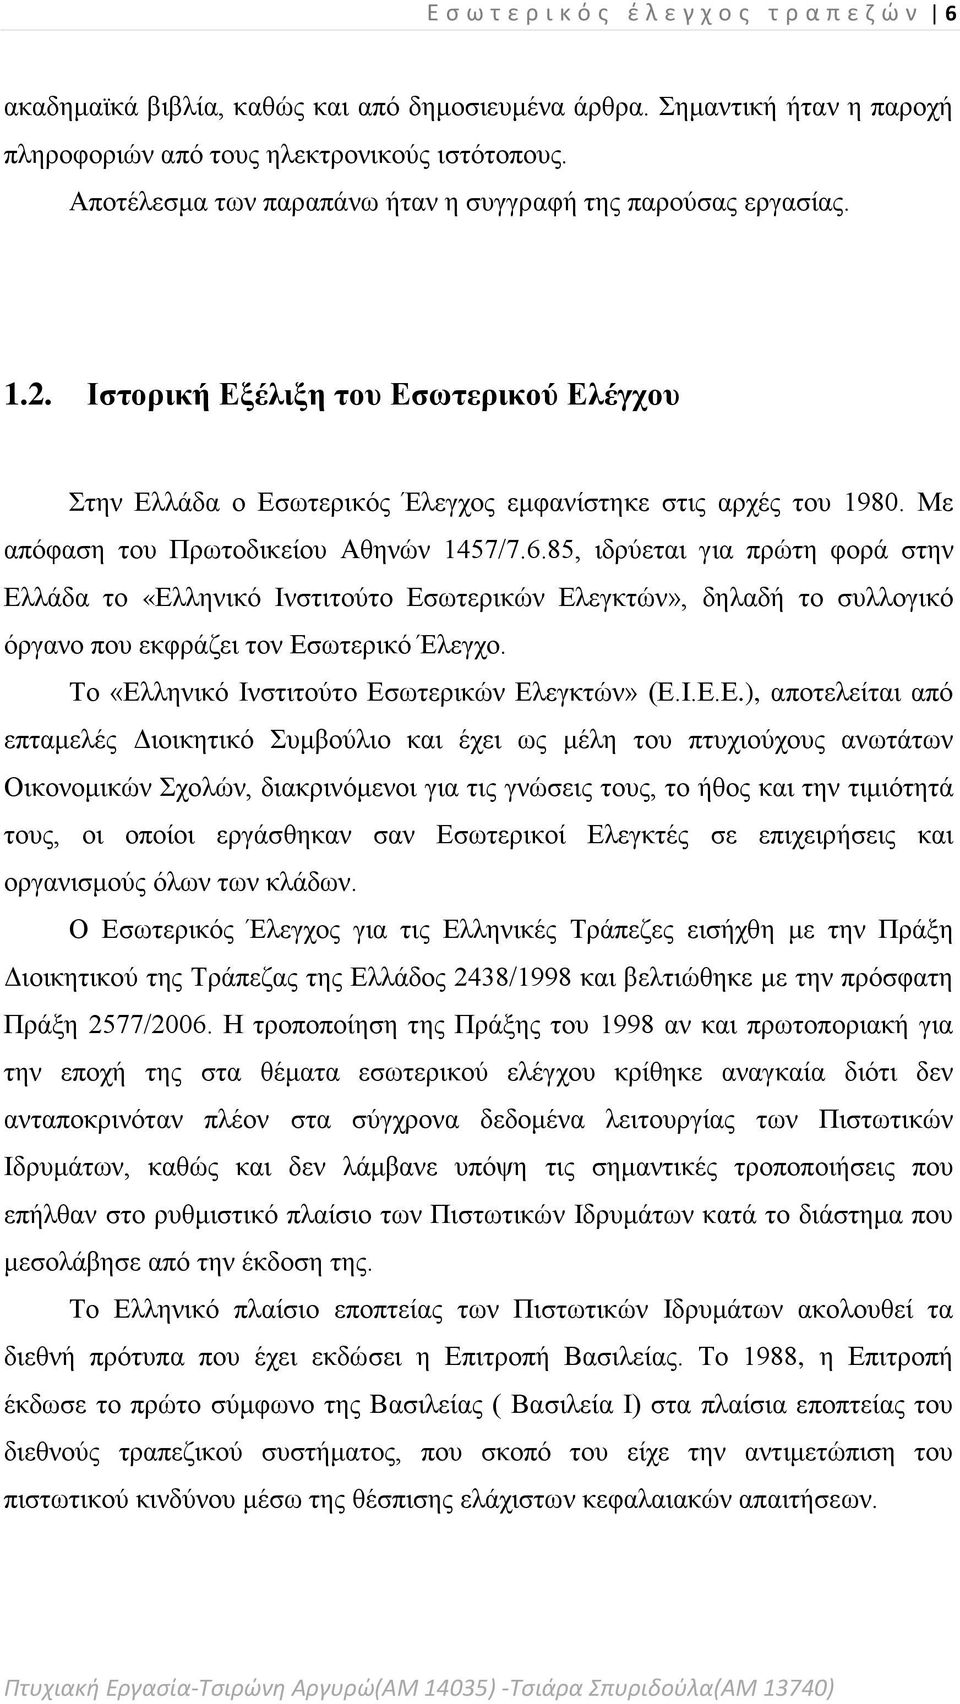 Με απόφαση του Πρωτοδικείου Αθηνών 1457/7.6.85, ιδρύεται για πρώτη φορά στην Ελλάδα το «Ελληνικό Ινστιτούτο Εσωτερικών Ελεγκτών», δηλαδή το συλλογικό όργανο που εκφράζει τον Εσωτερικό Έλεγχο.